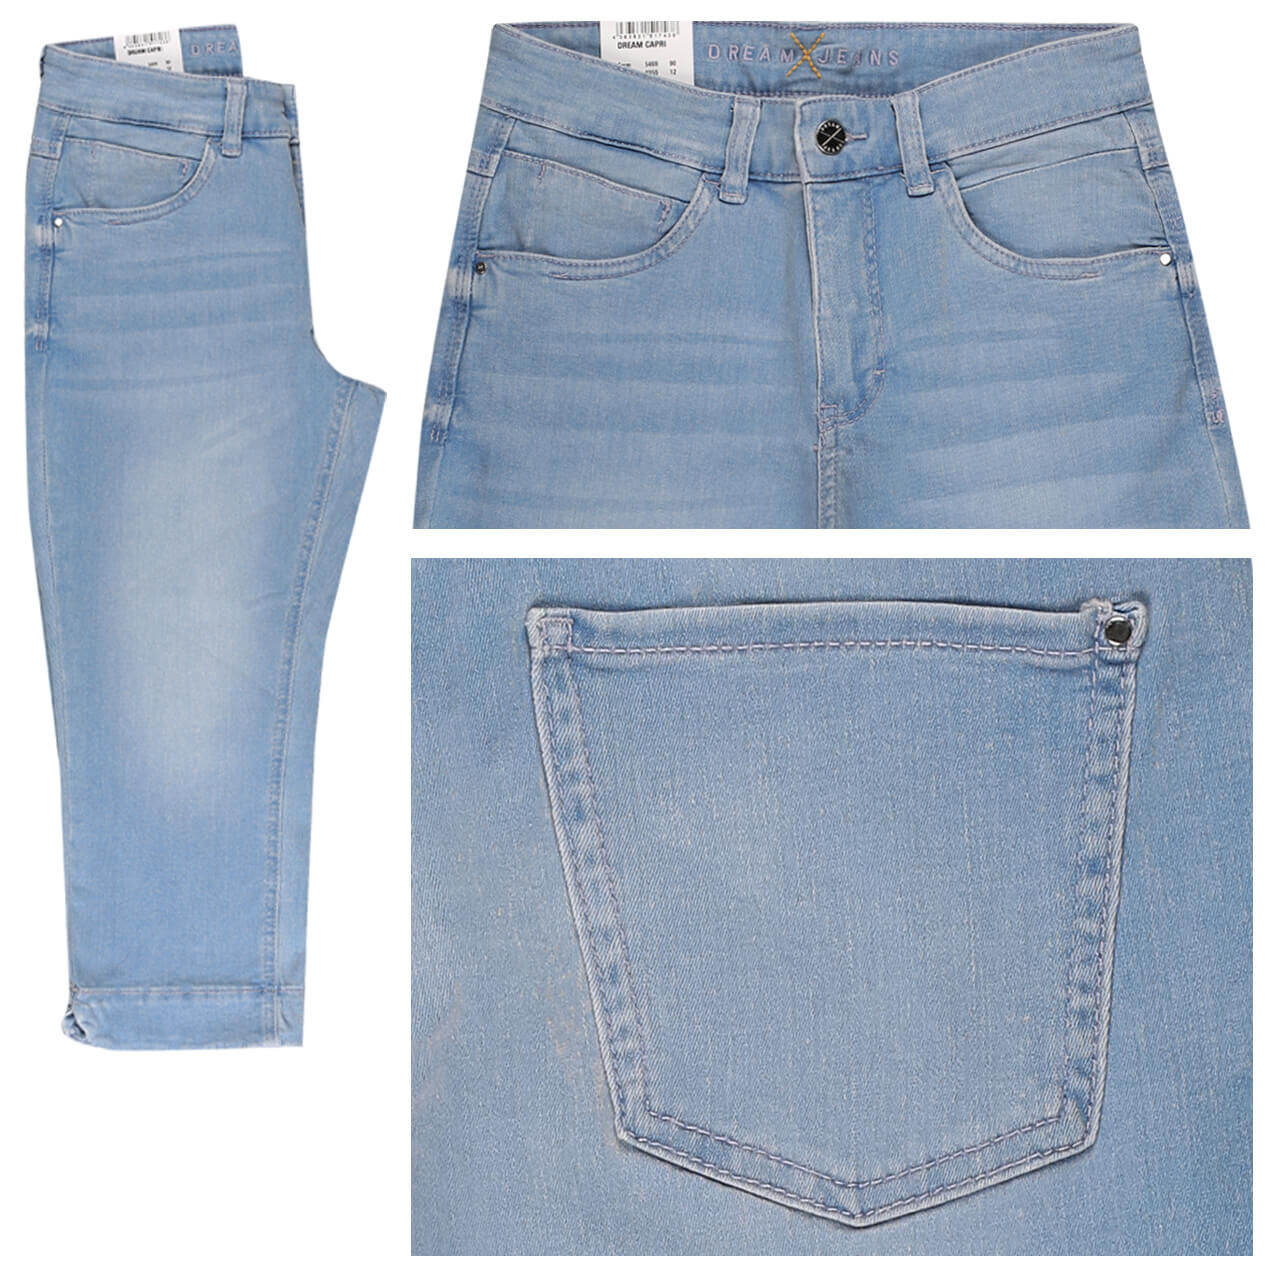 MAC Jeans Dream Capri für Damen in Hellblau angewaschen, FarbNr.: D427